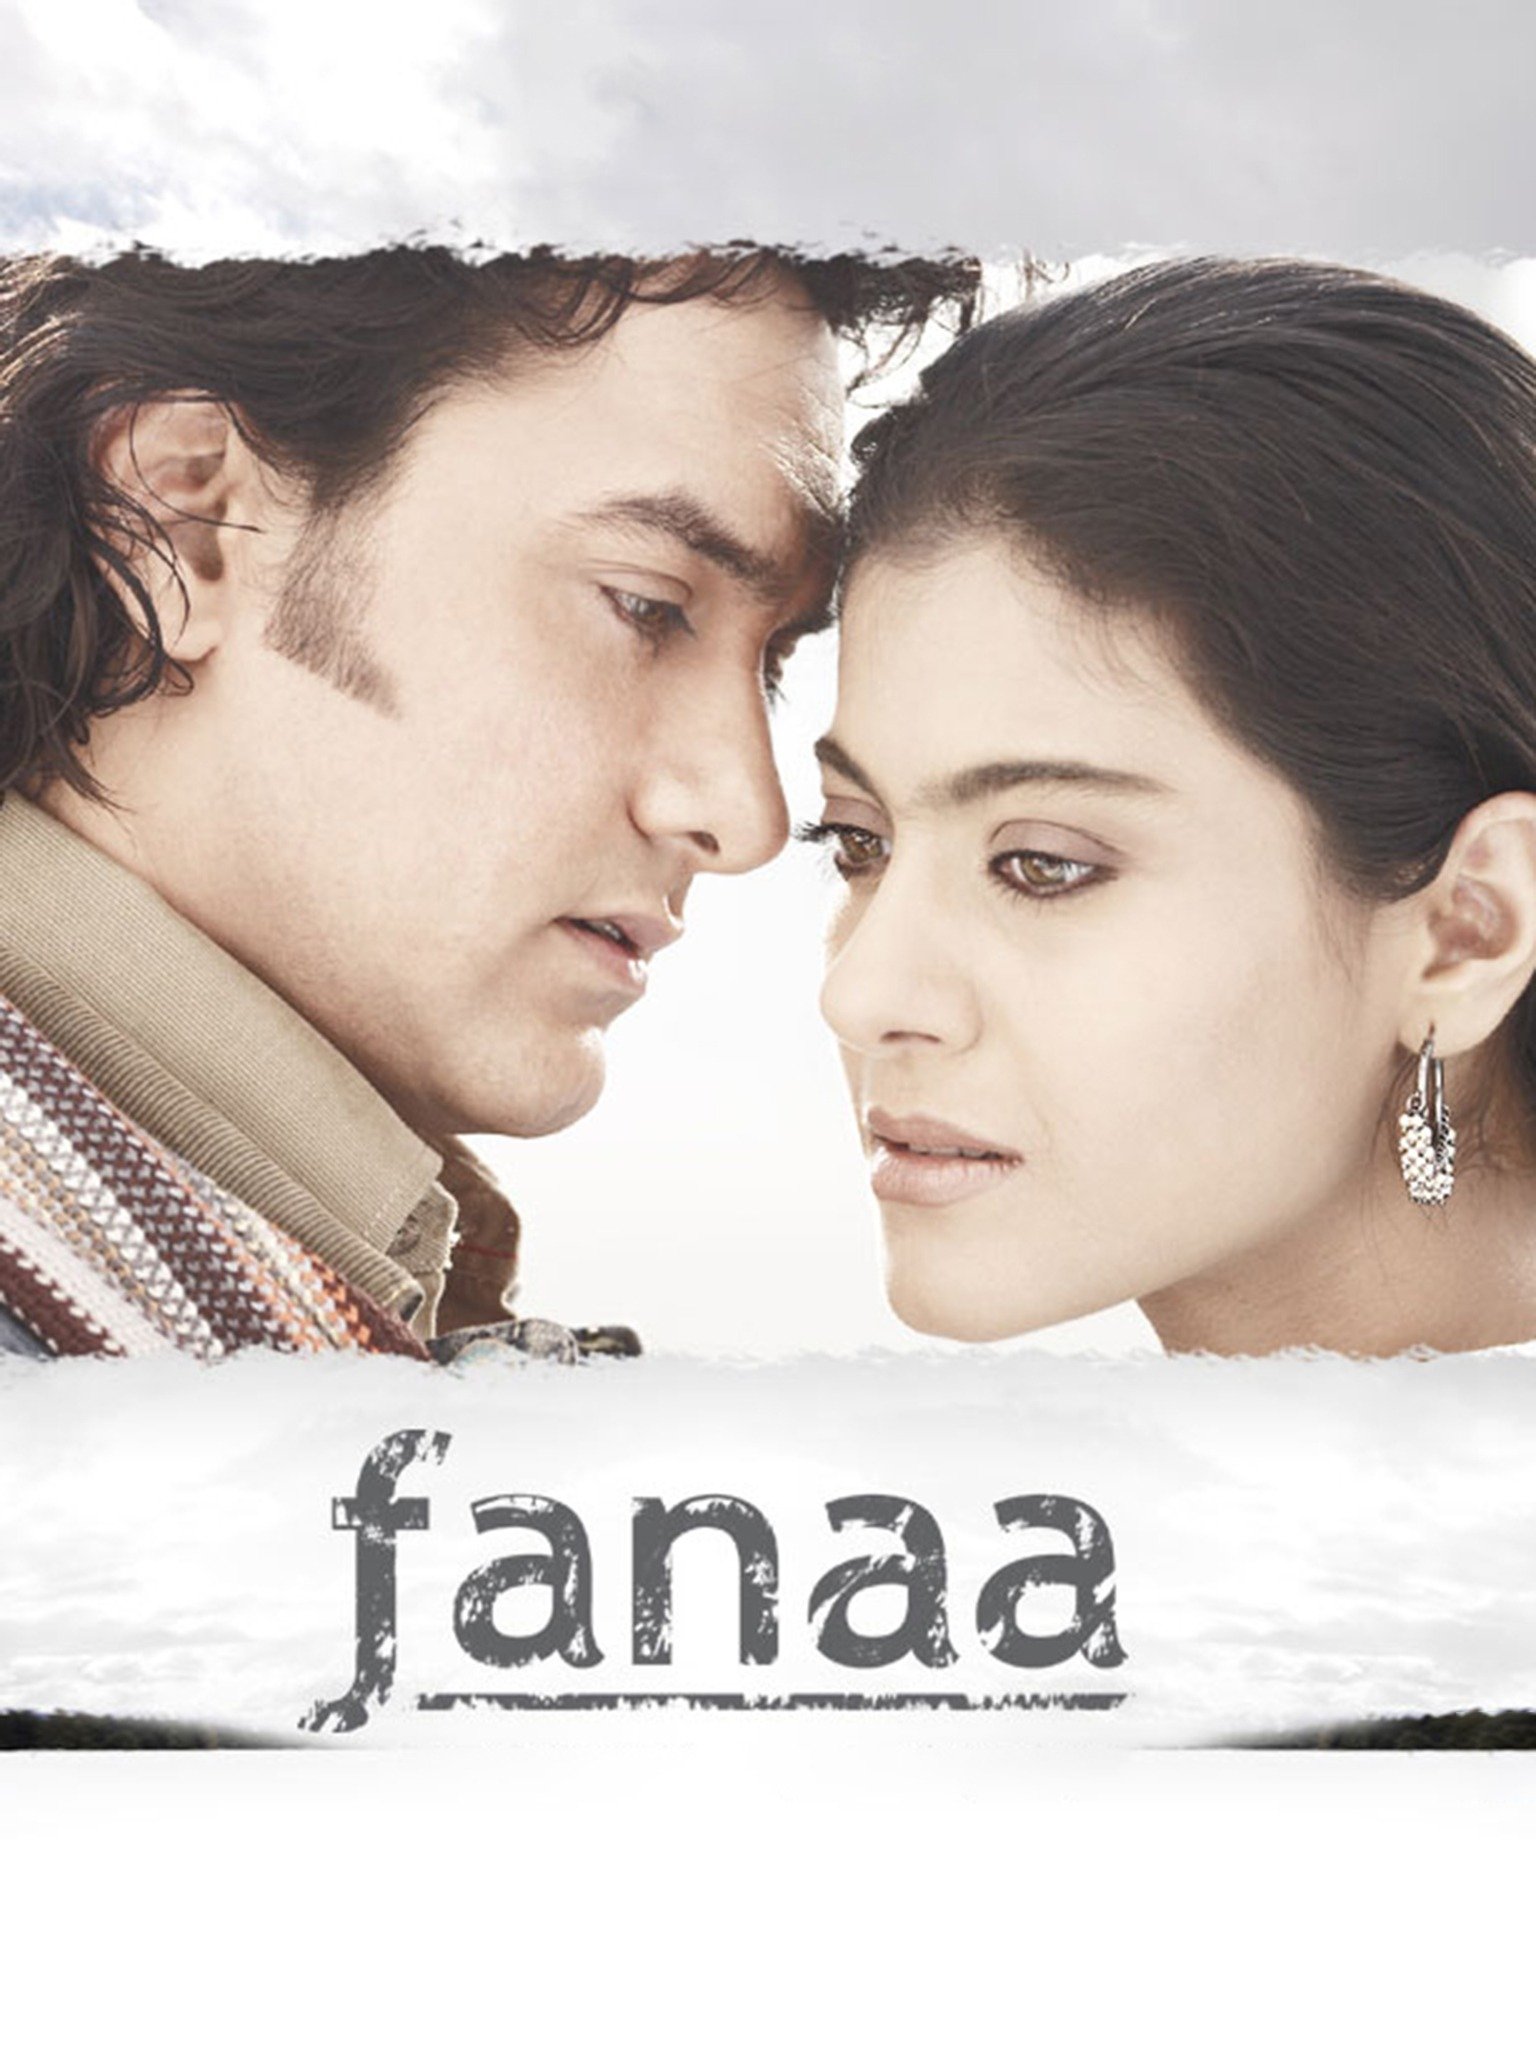 fanaa movie